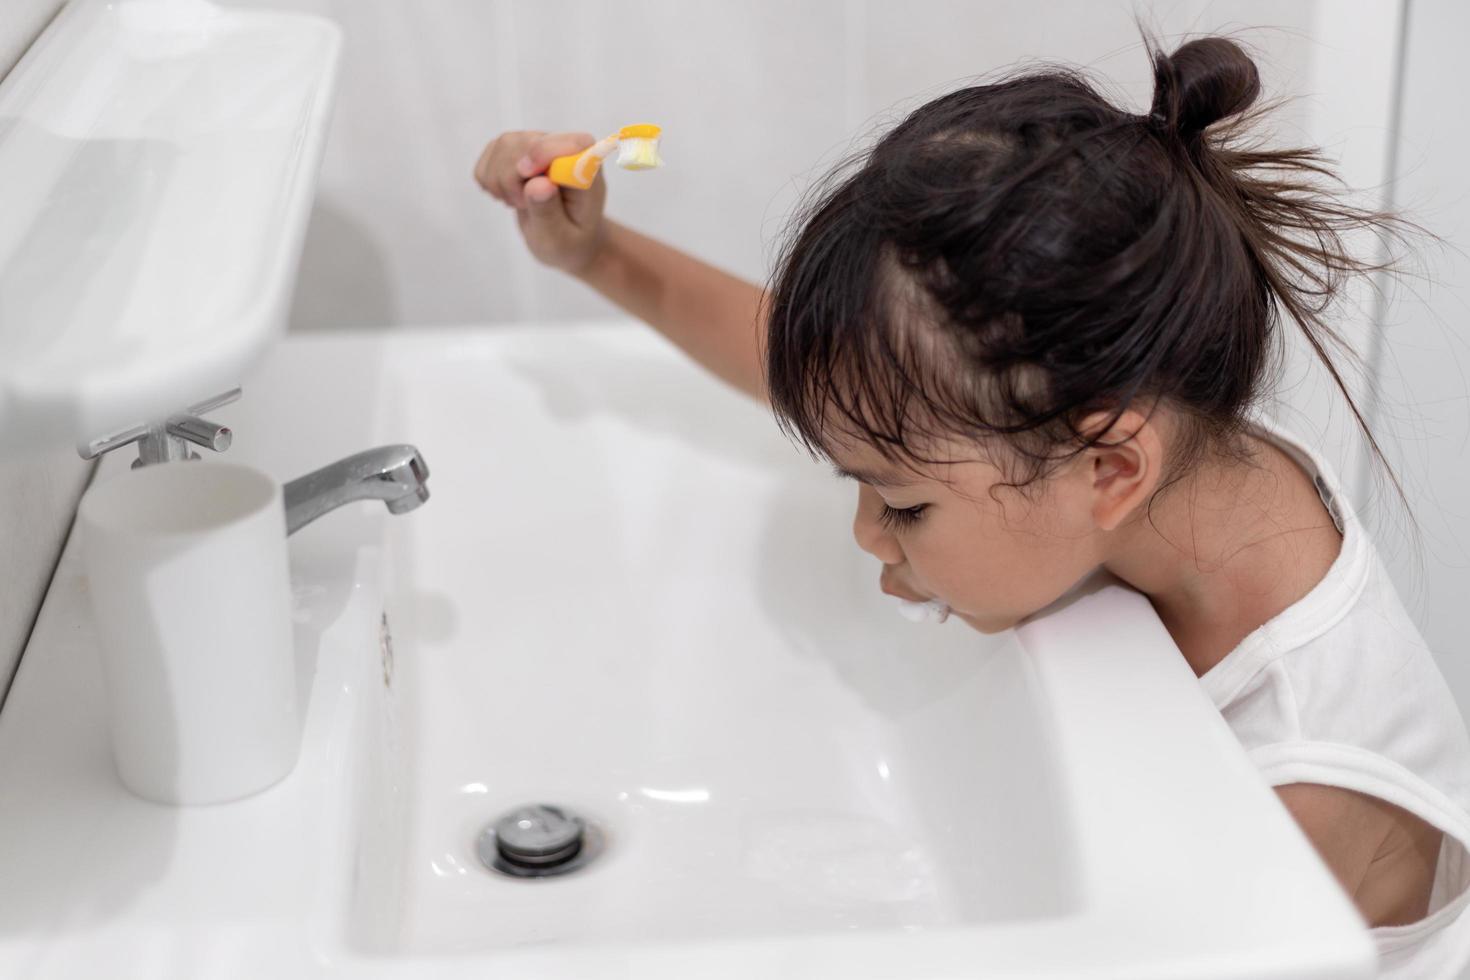 petite fille mignonne se nettoyant les dents avec une brosse à dents dans la salle de bain photo